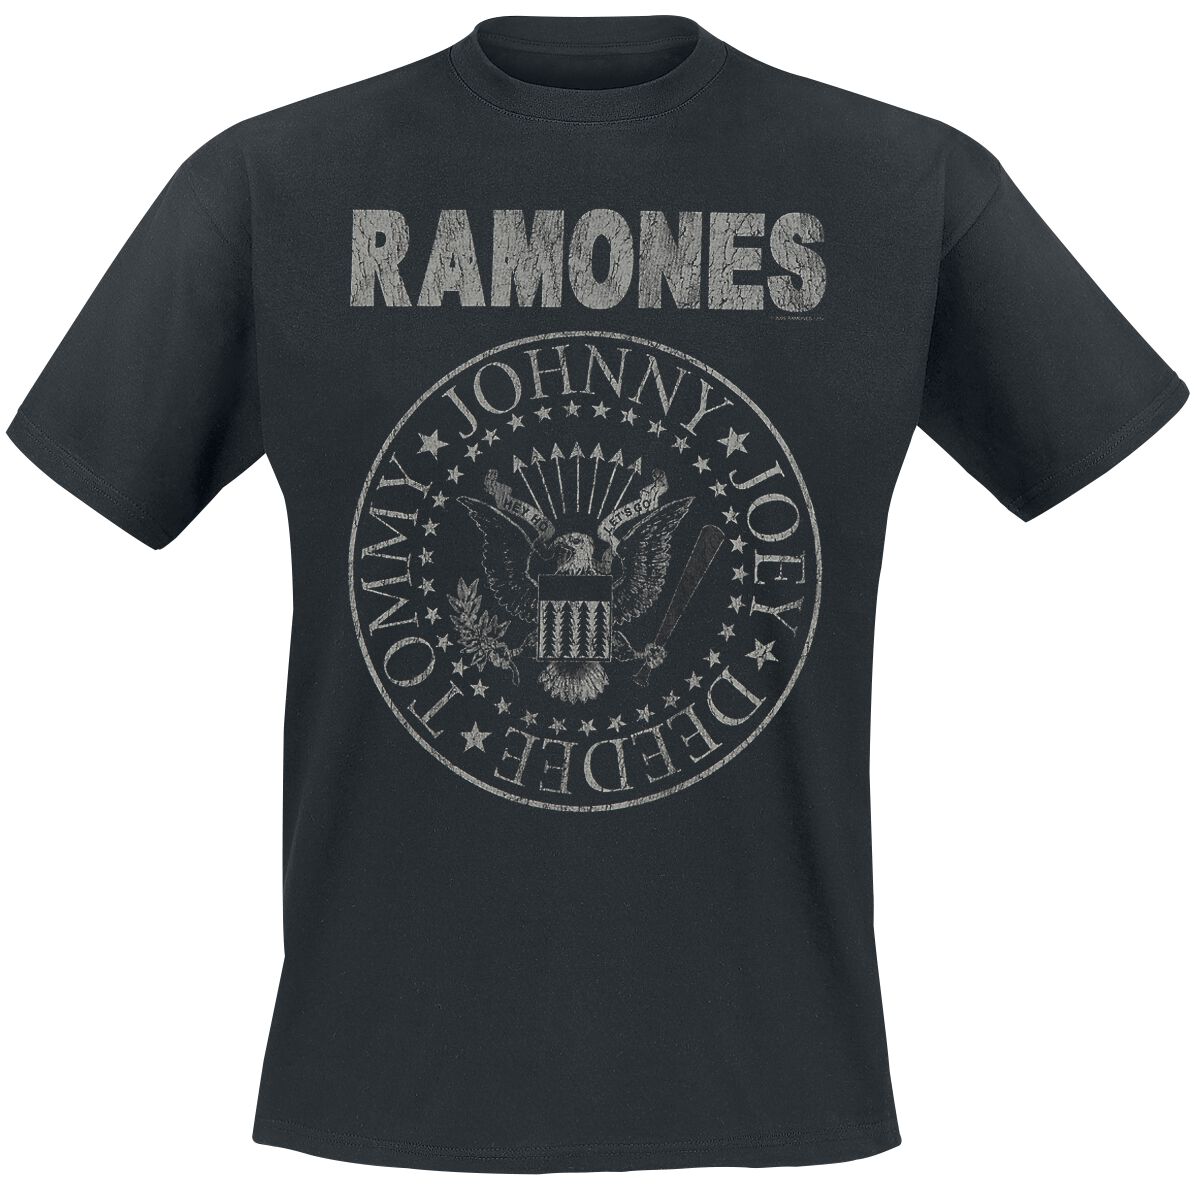 Ramones T-Shirt - Hey Ho Let`s Go - Vintage - S bis 5XL - für Männer - Größe 5XL - schwarz  - Lizenziertes Merchandise!